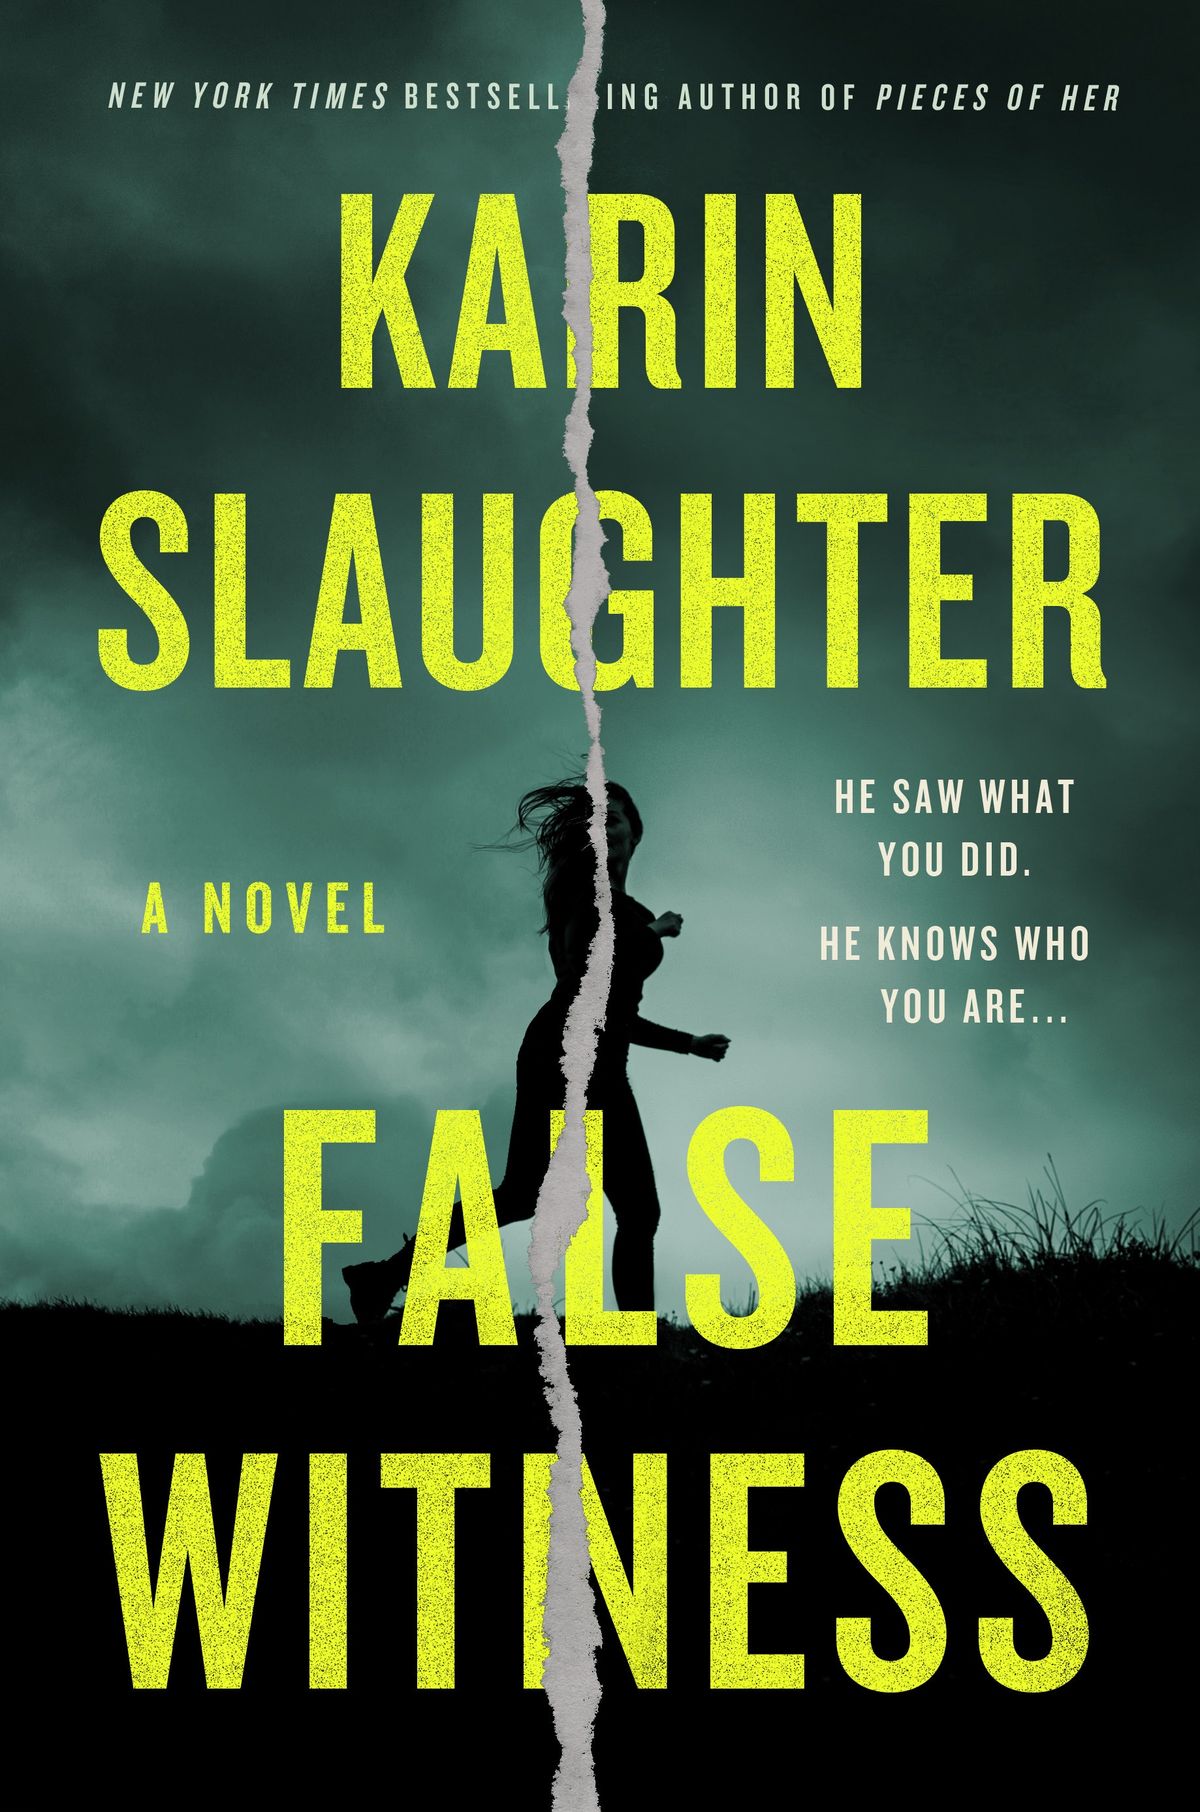 Liebte den Auszug von Karin Slaughters falschem Zeugen von letzter Woche? Es wird nur besser.